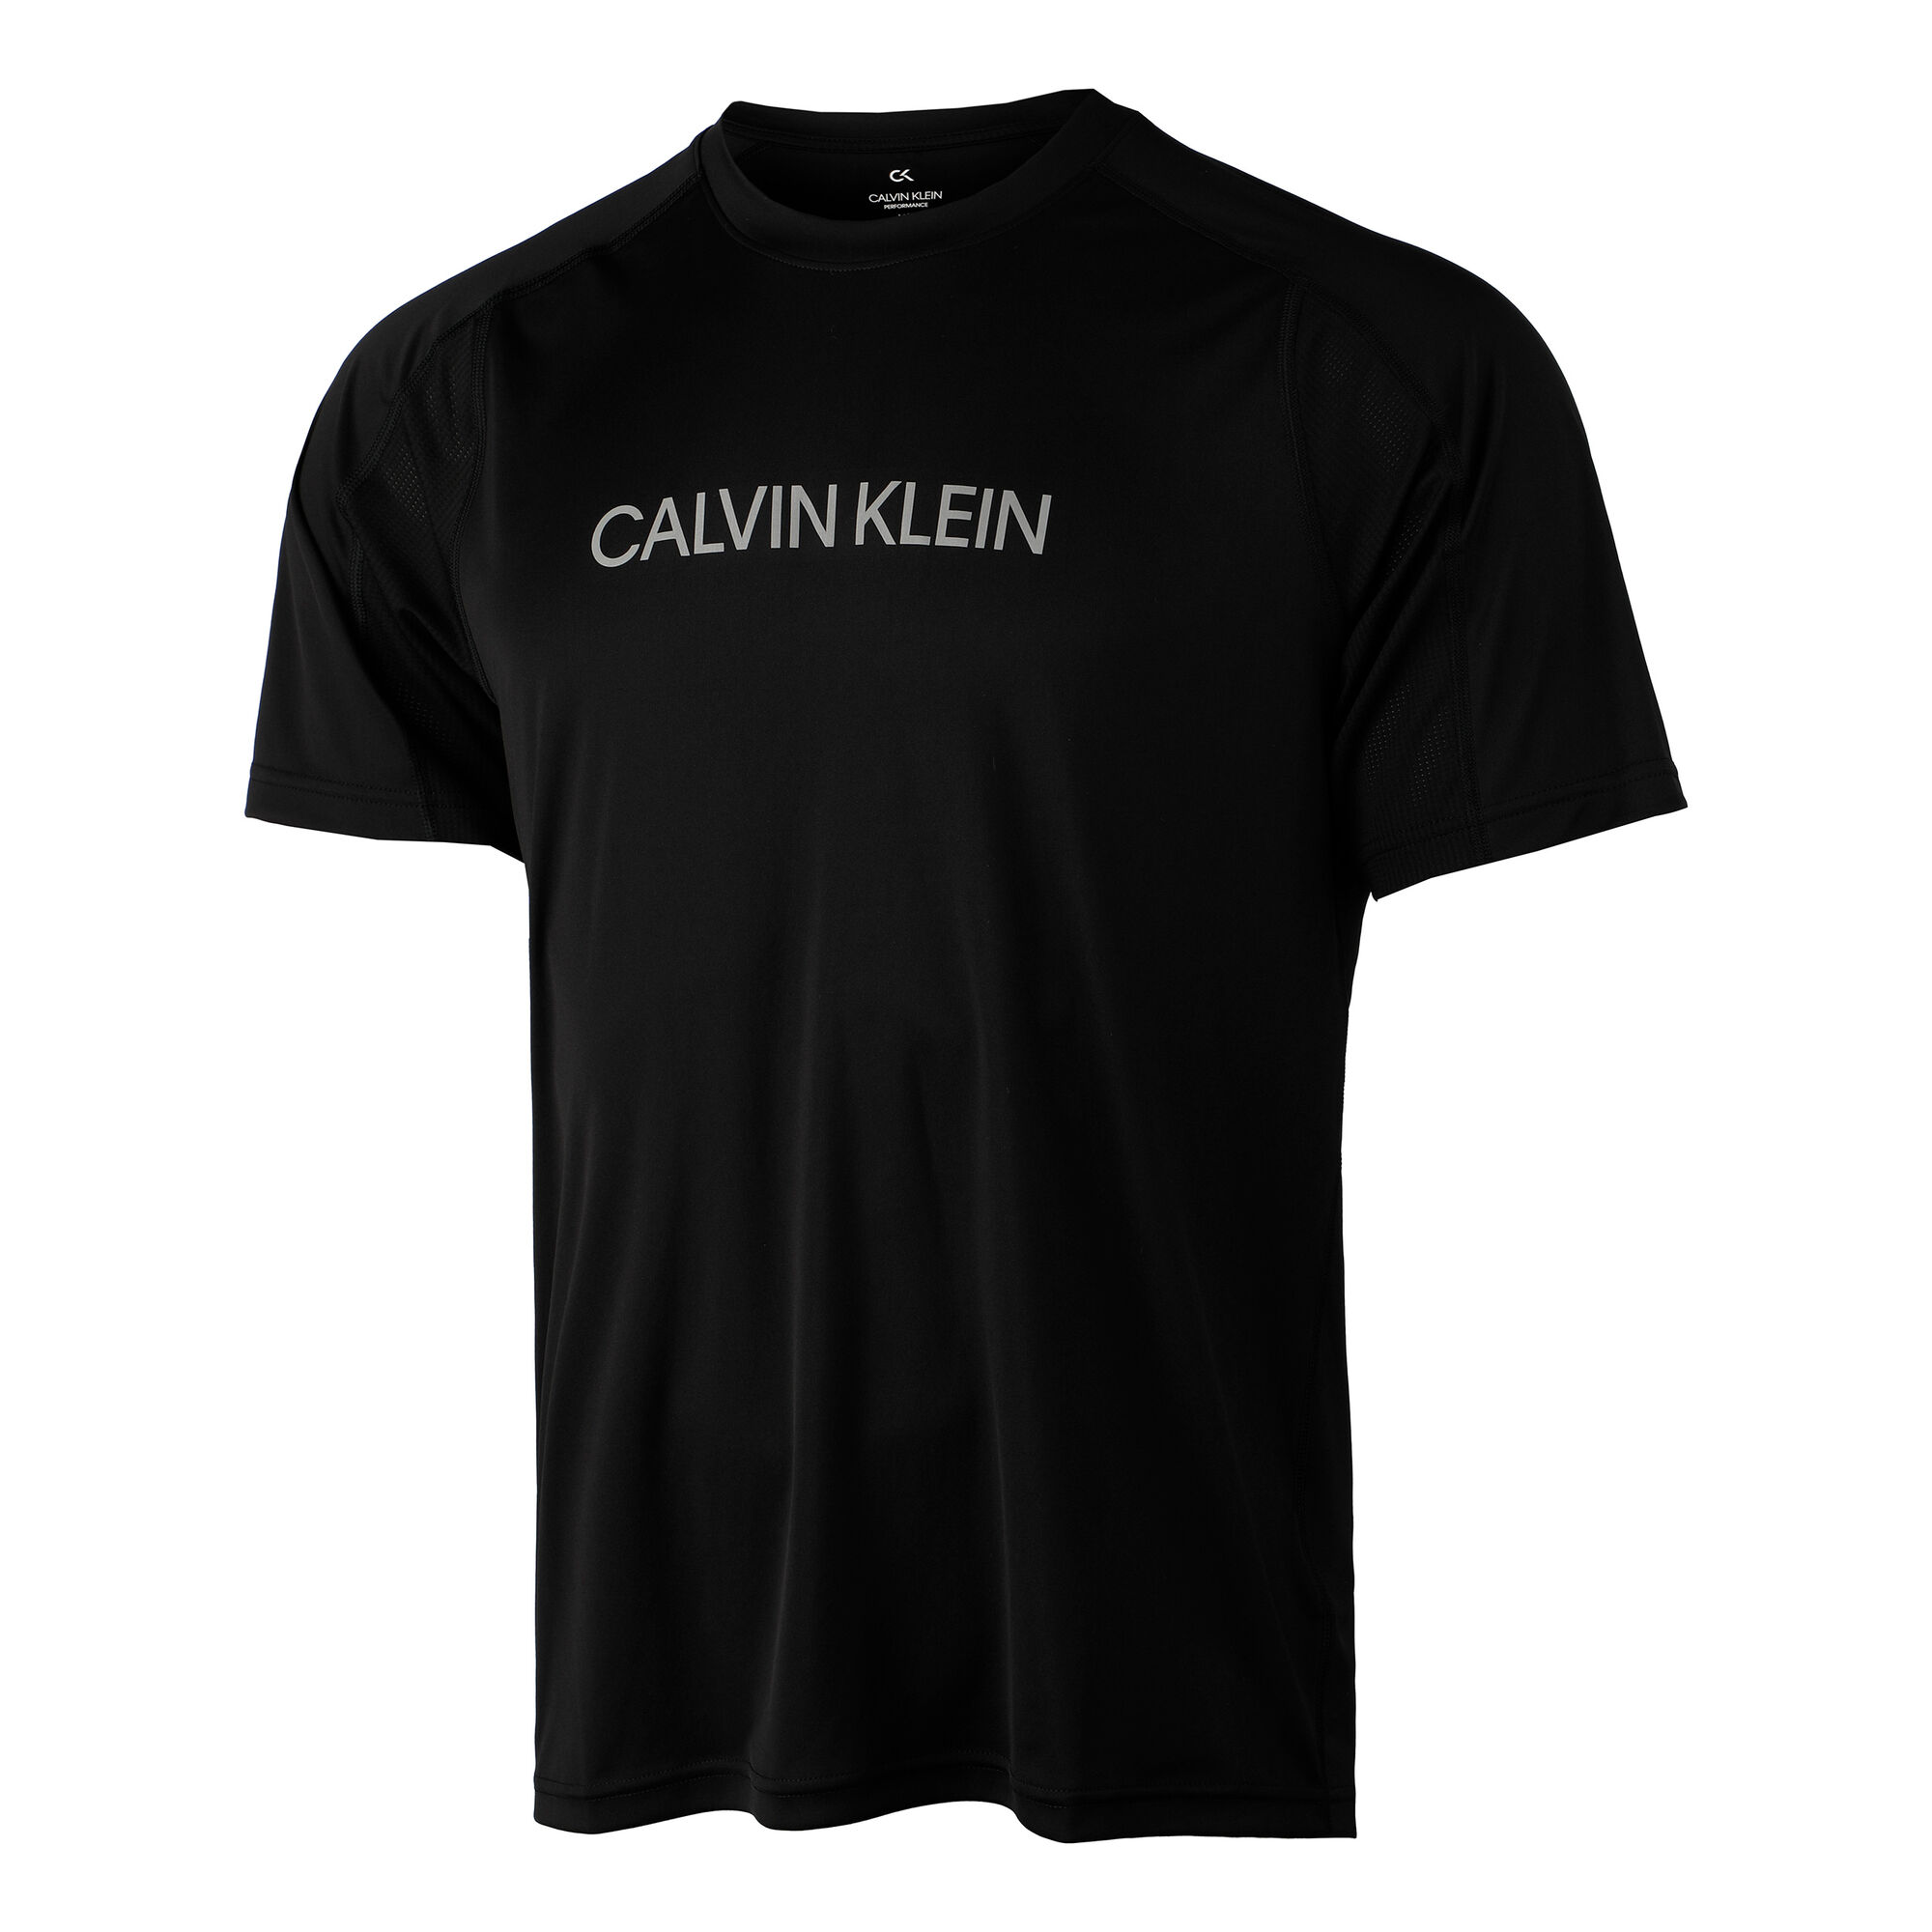 Buy Calvin Klein T-Shirt Men Black, White online